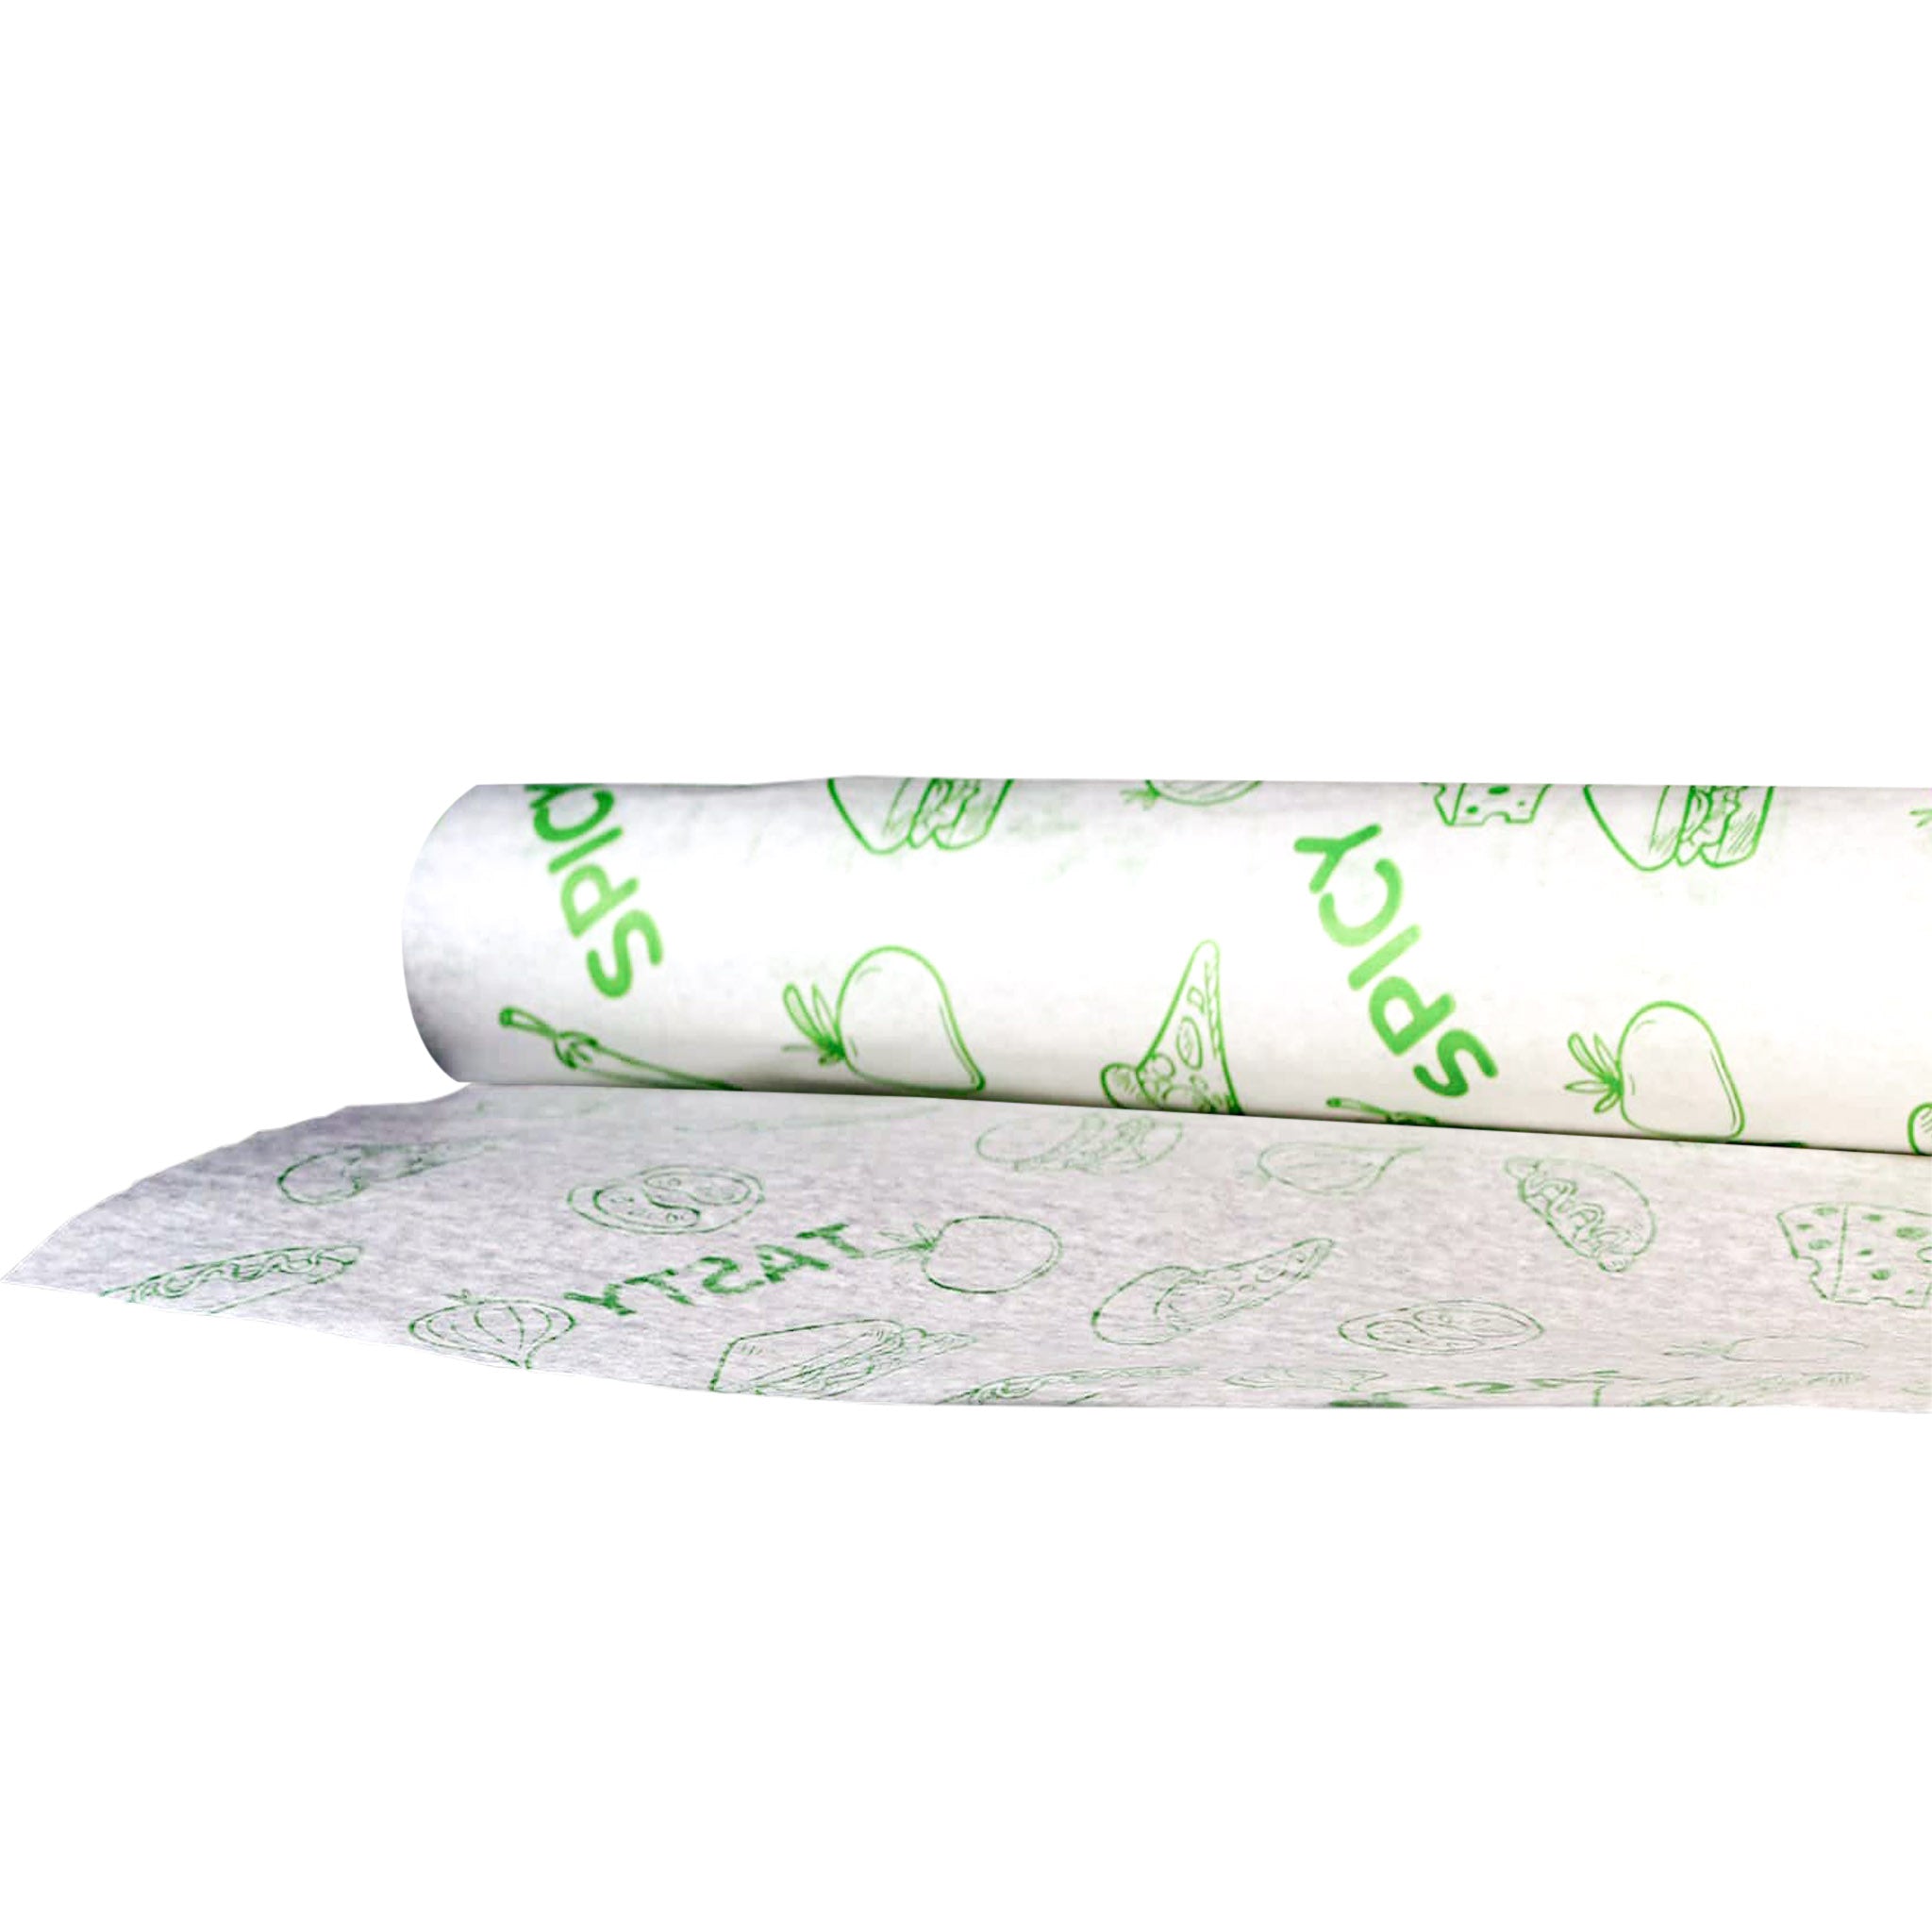 Choice 18 x 1000' 40# Wet Wax Paper Roll